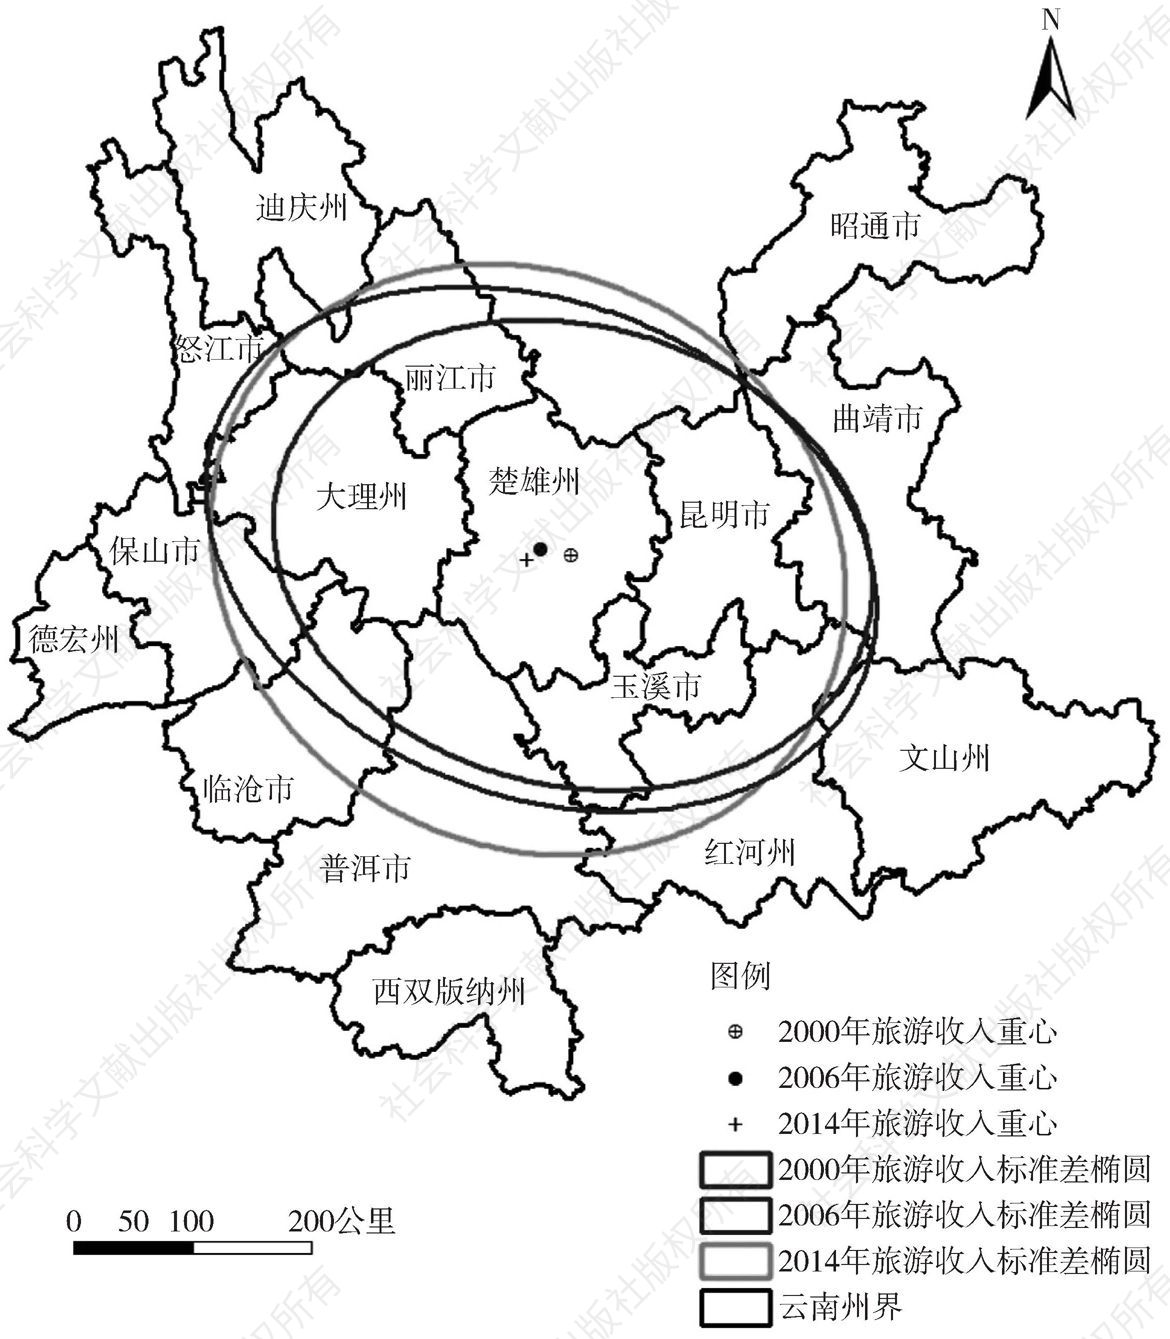 图2-11 云南省2000年、2006年、2014年旅游标准差椭圆演变示意图